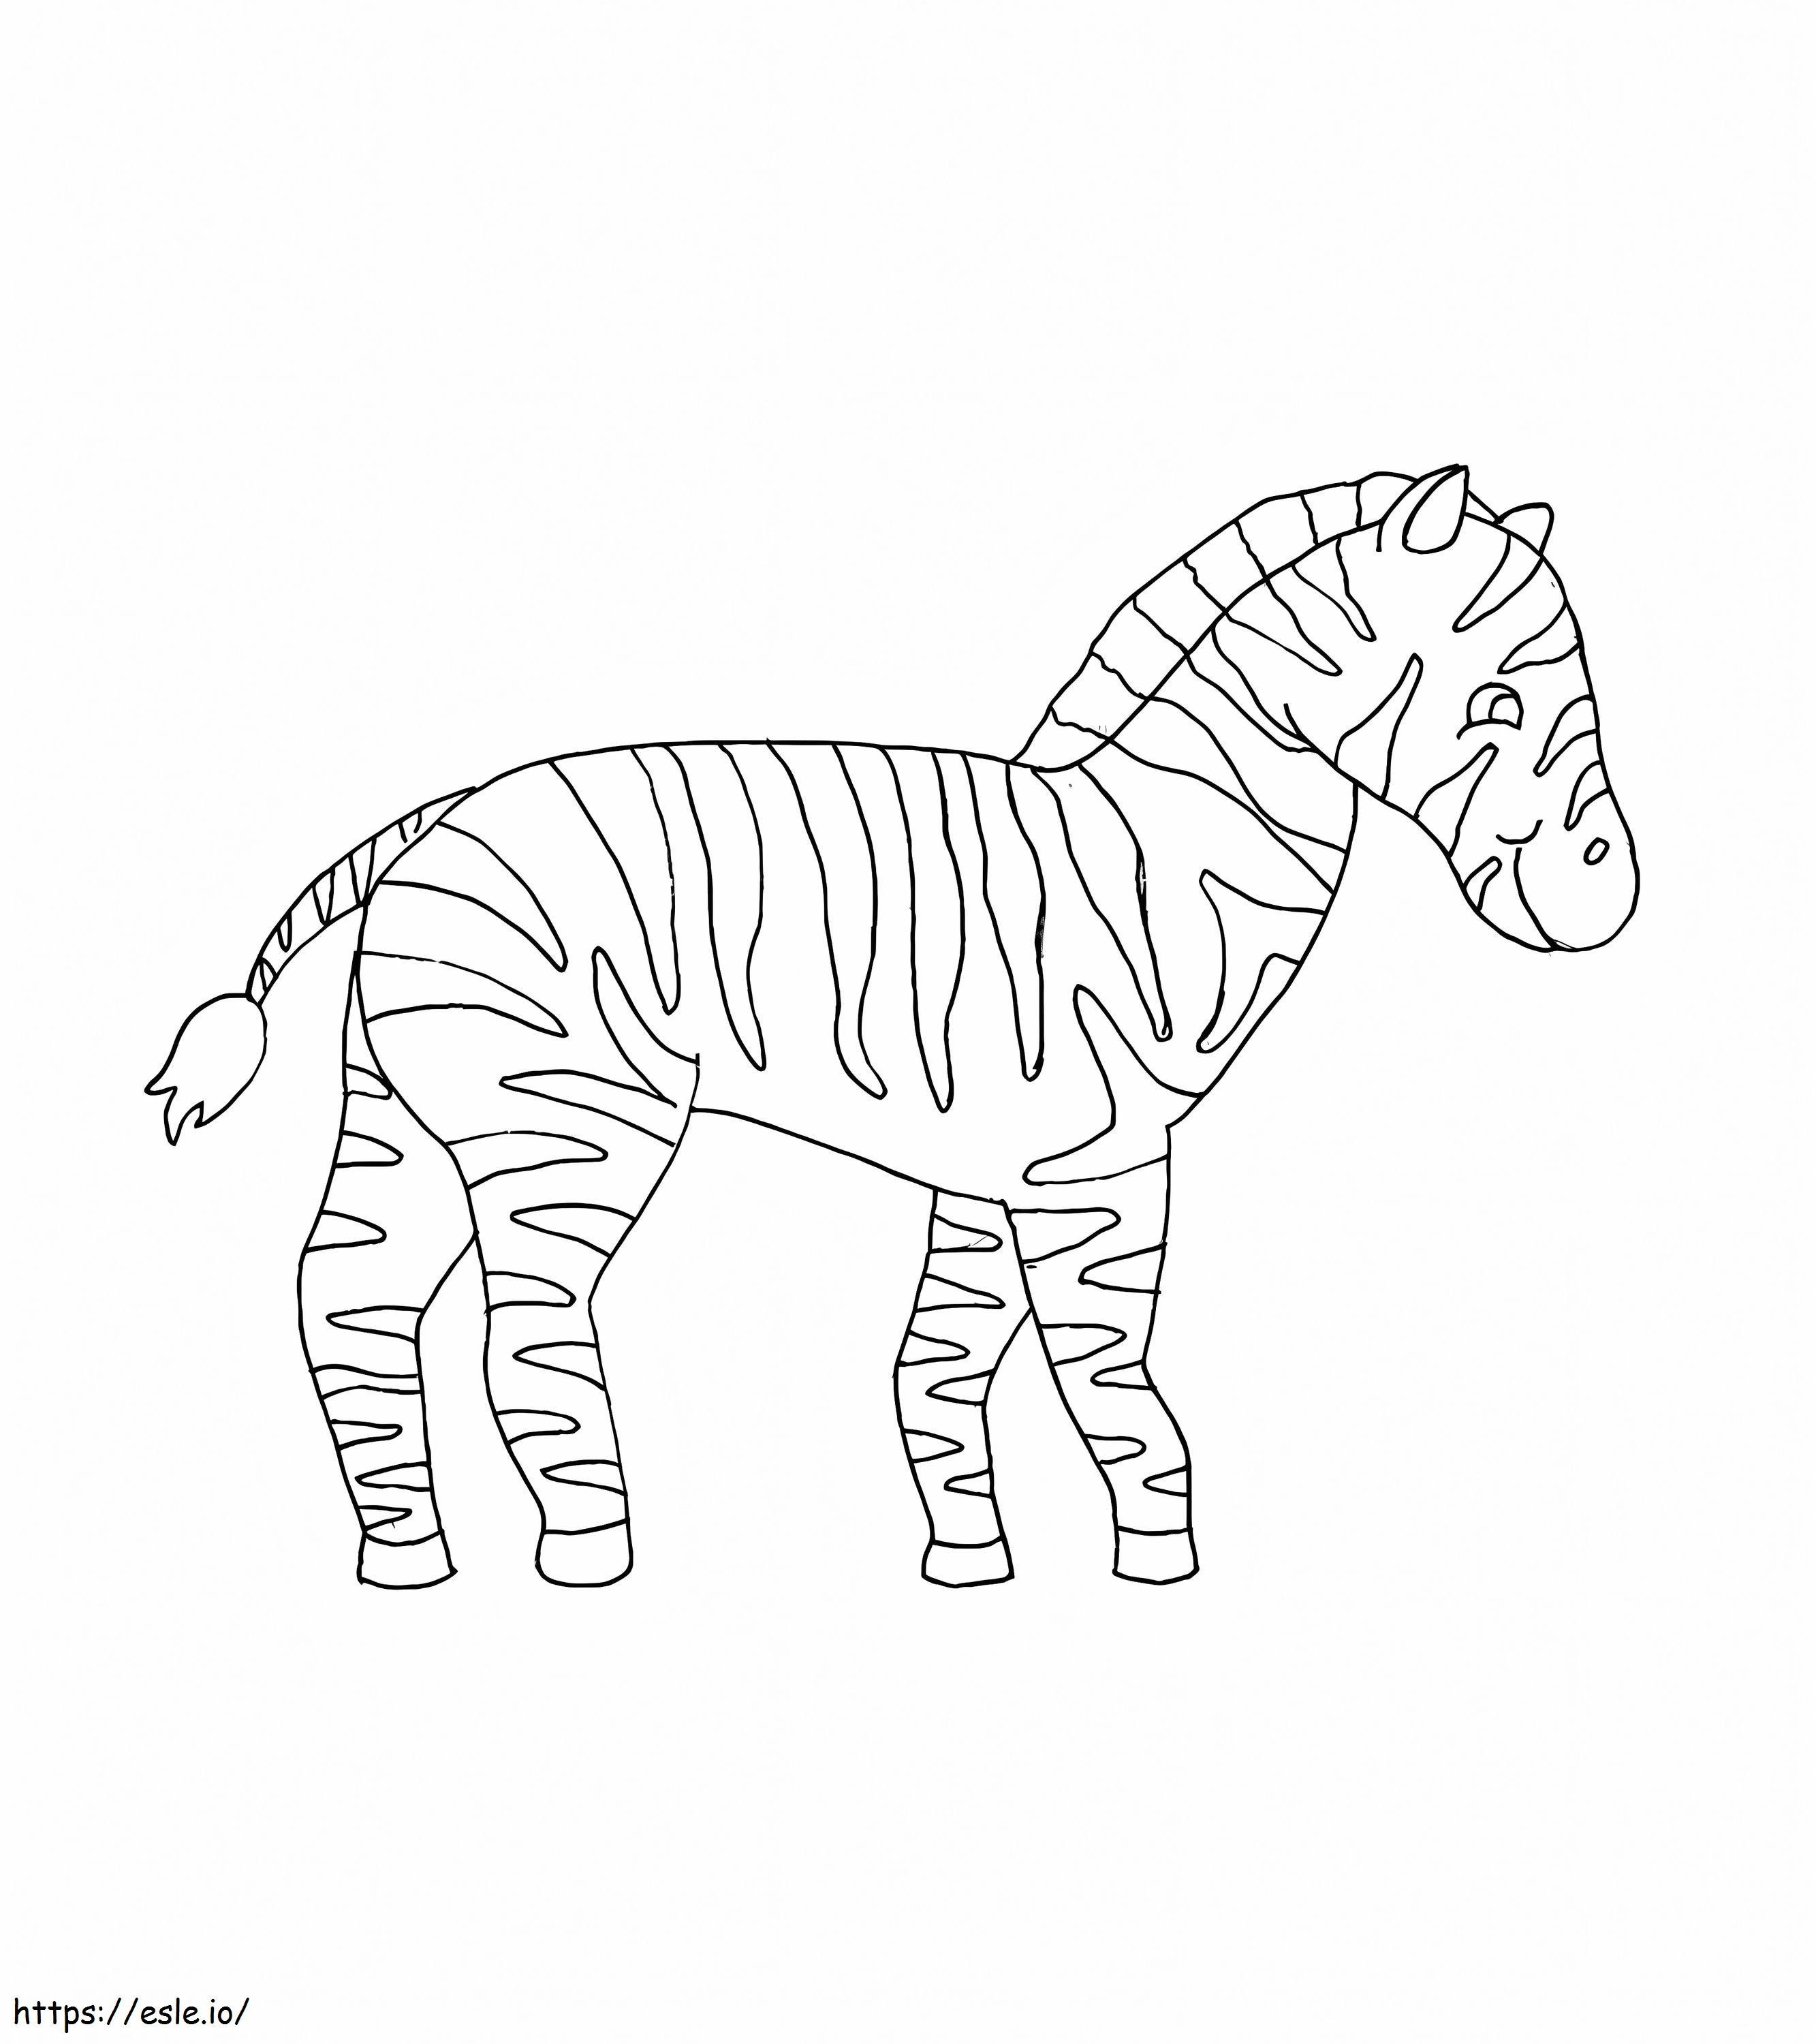 Zebra normale da colorare